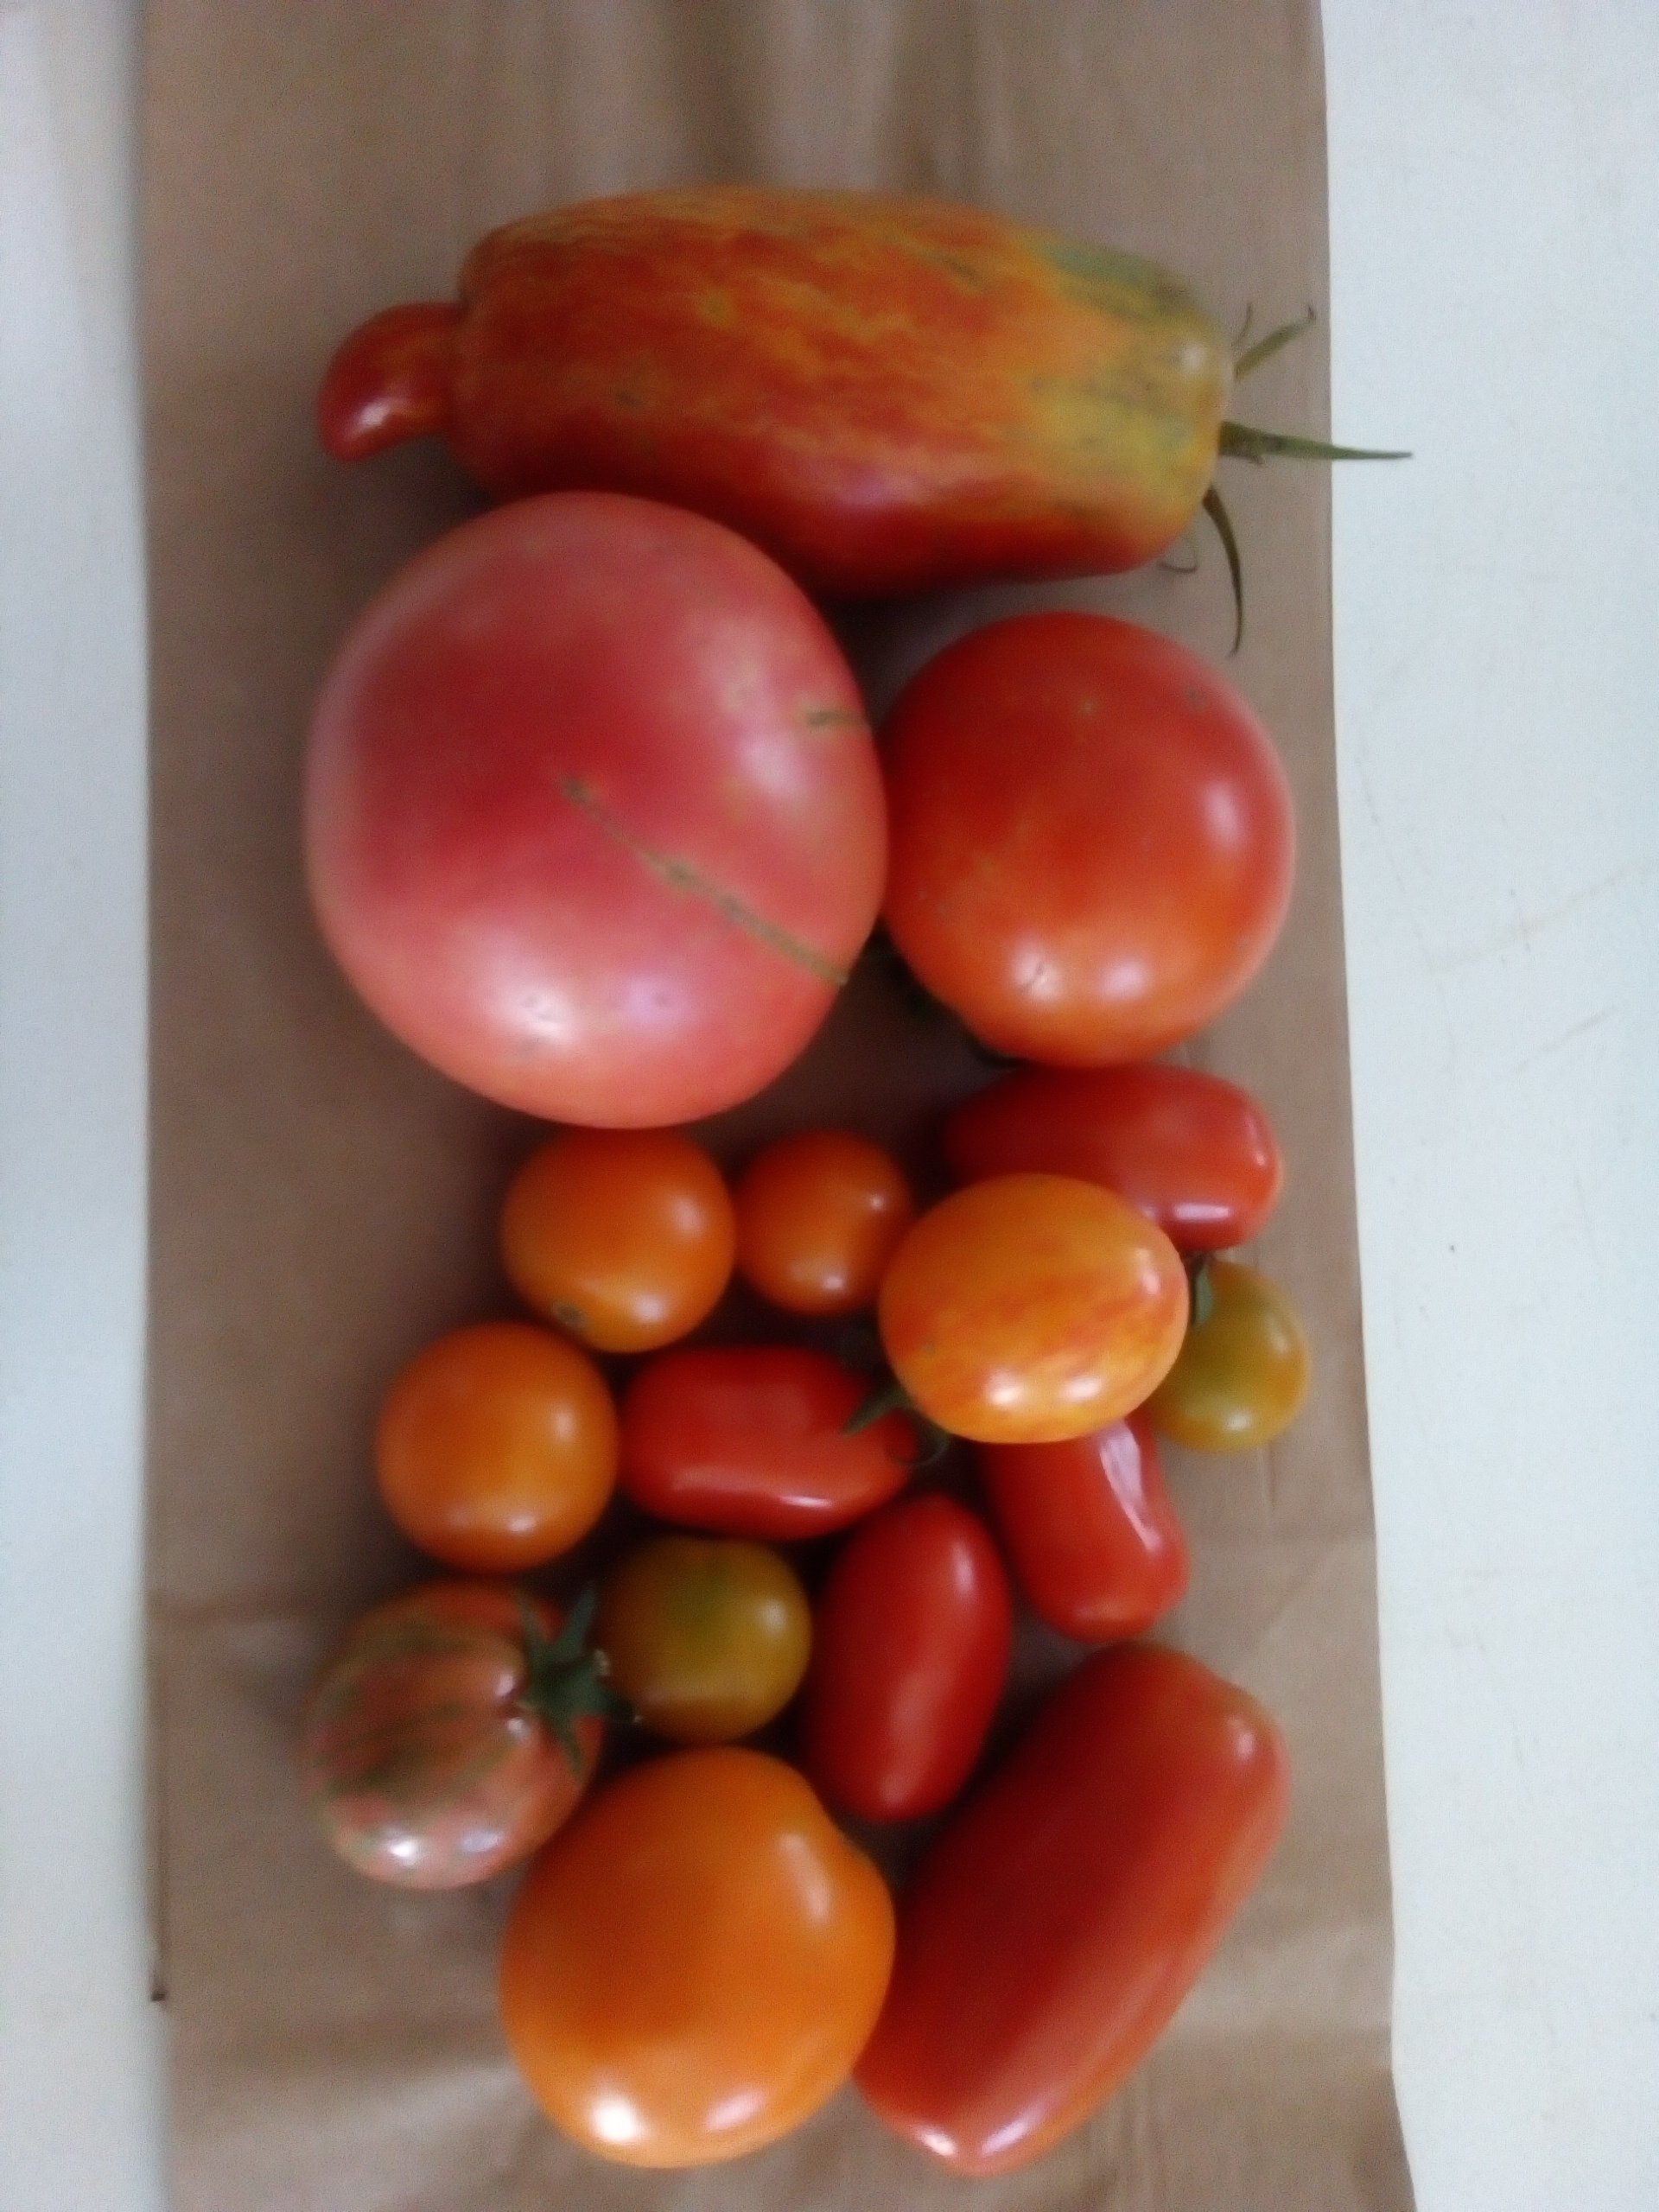 Week 9 -- Tomatoes